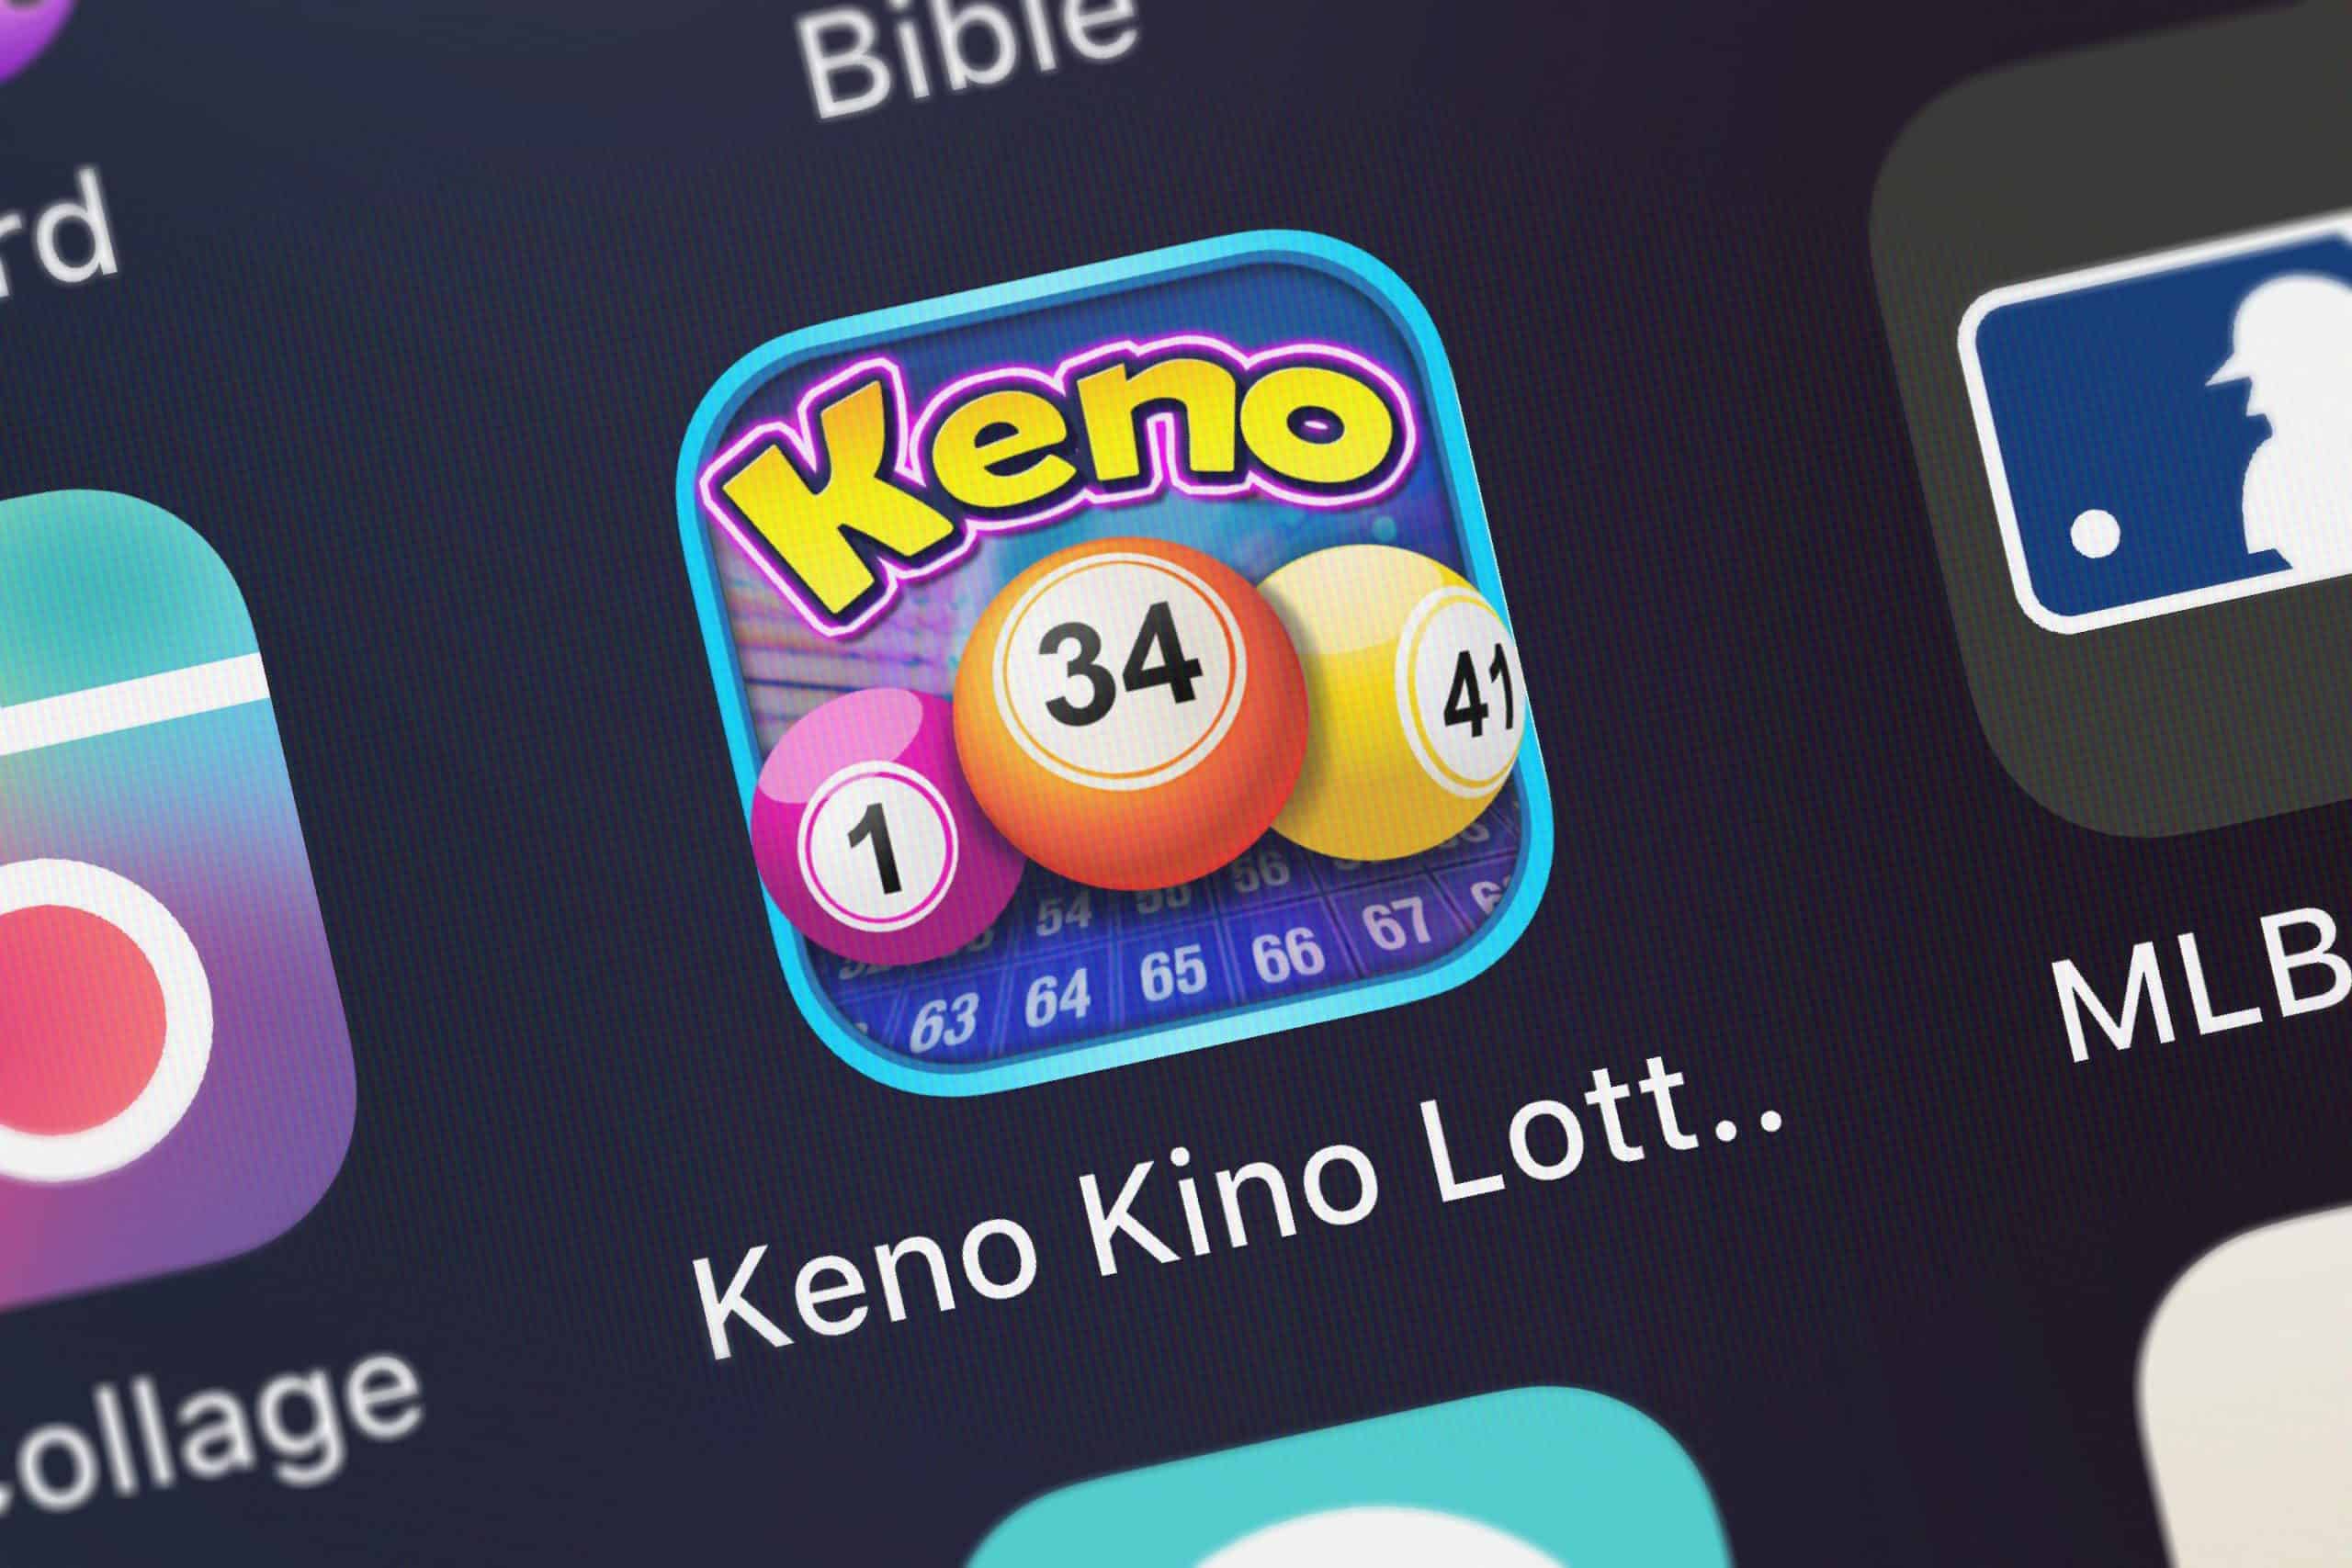 Ako vybrať čísla v hre Keno?